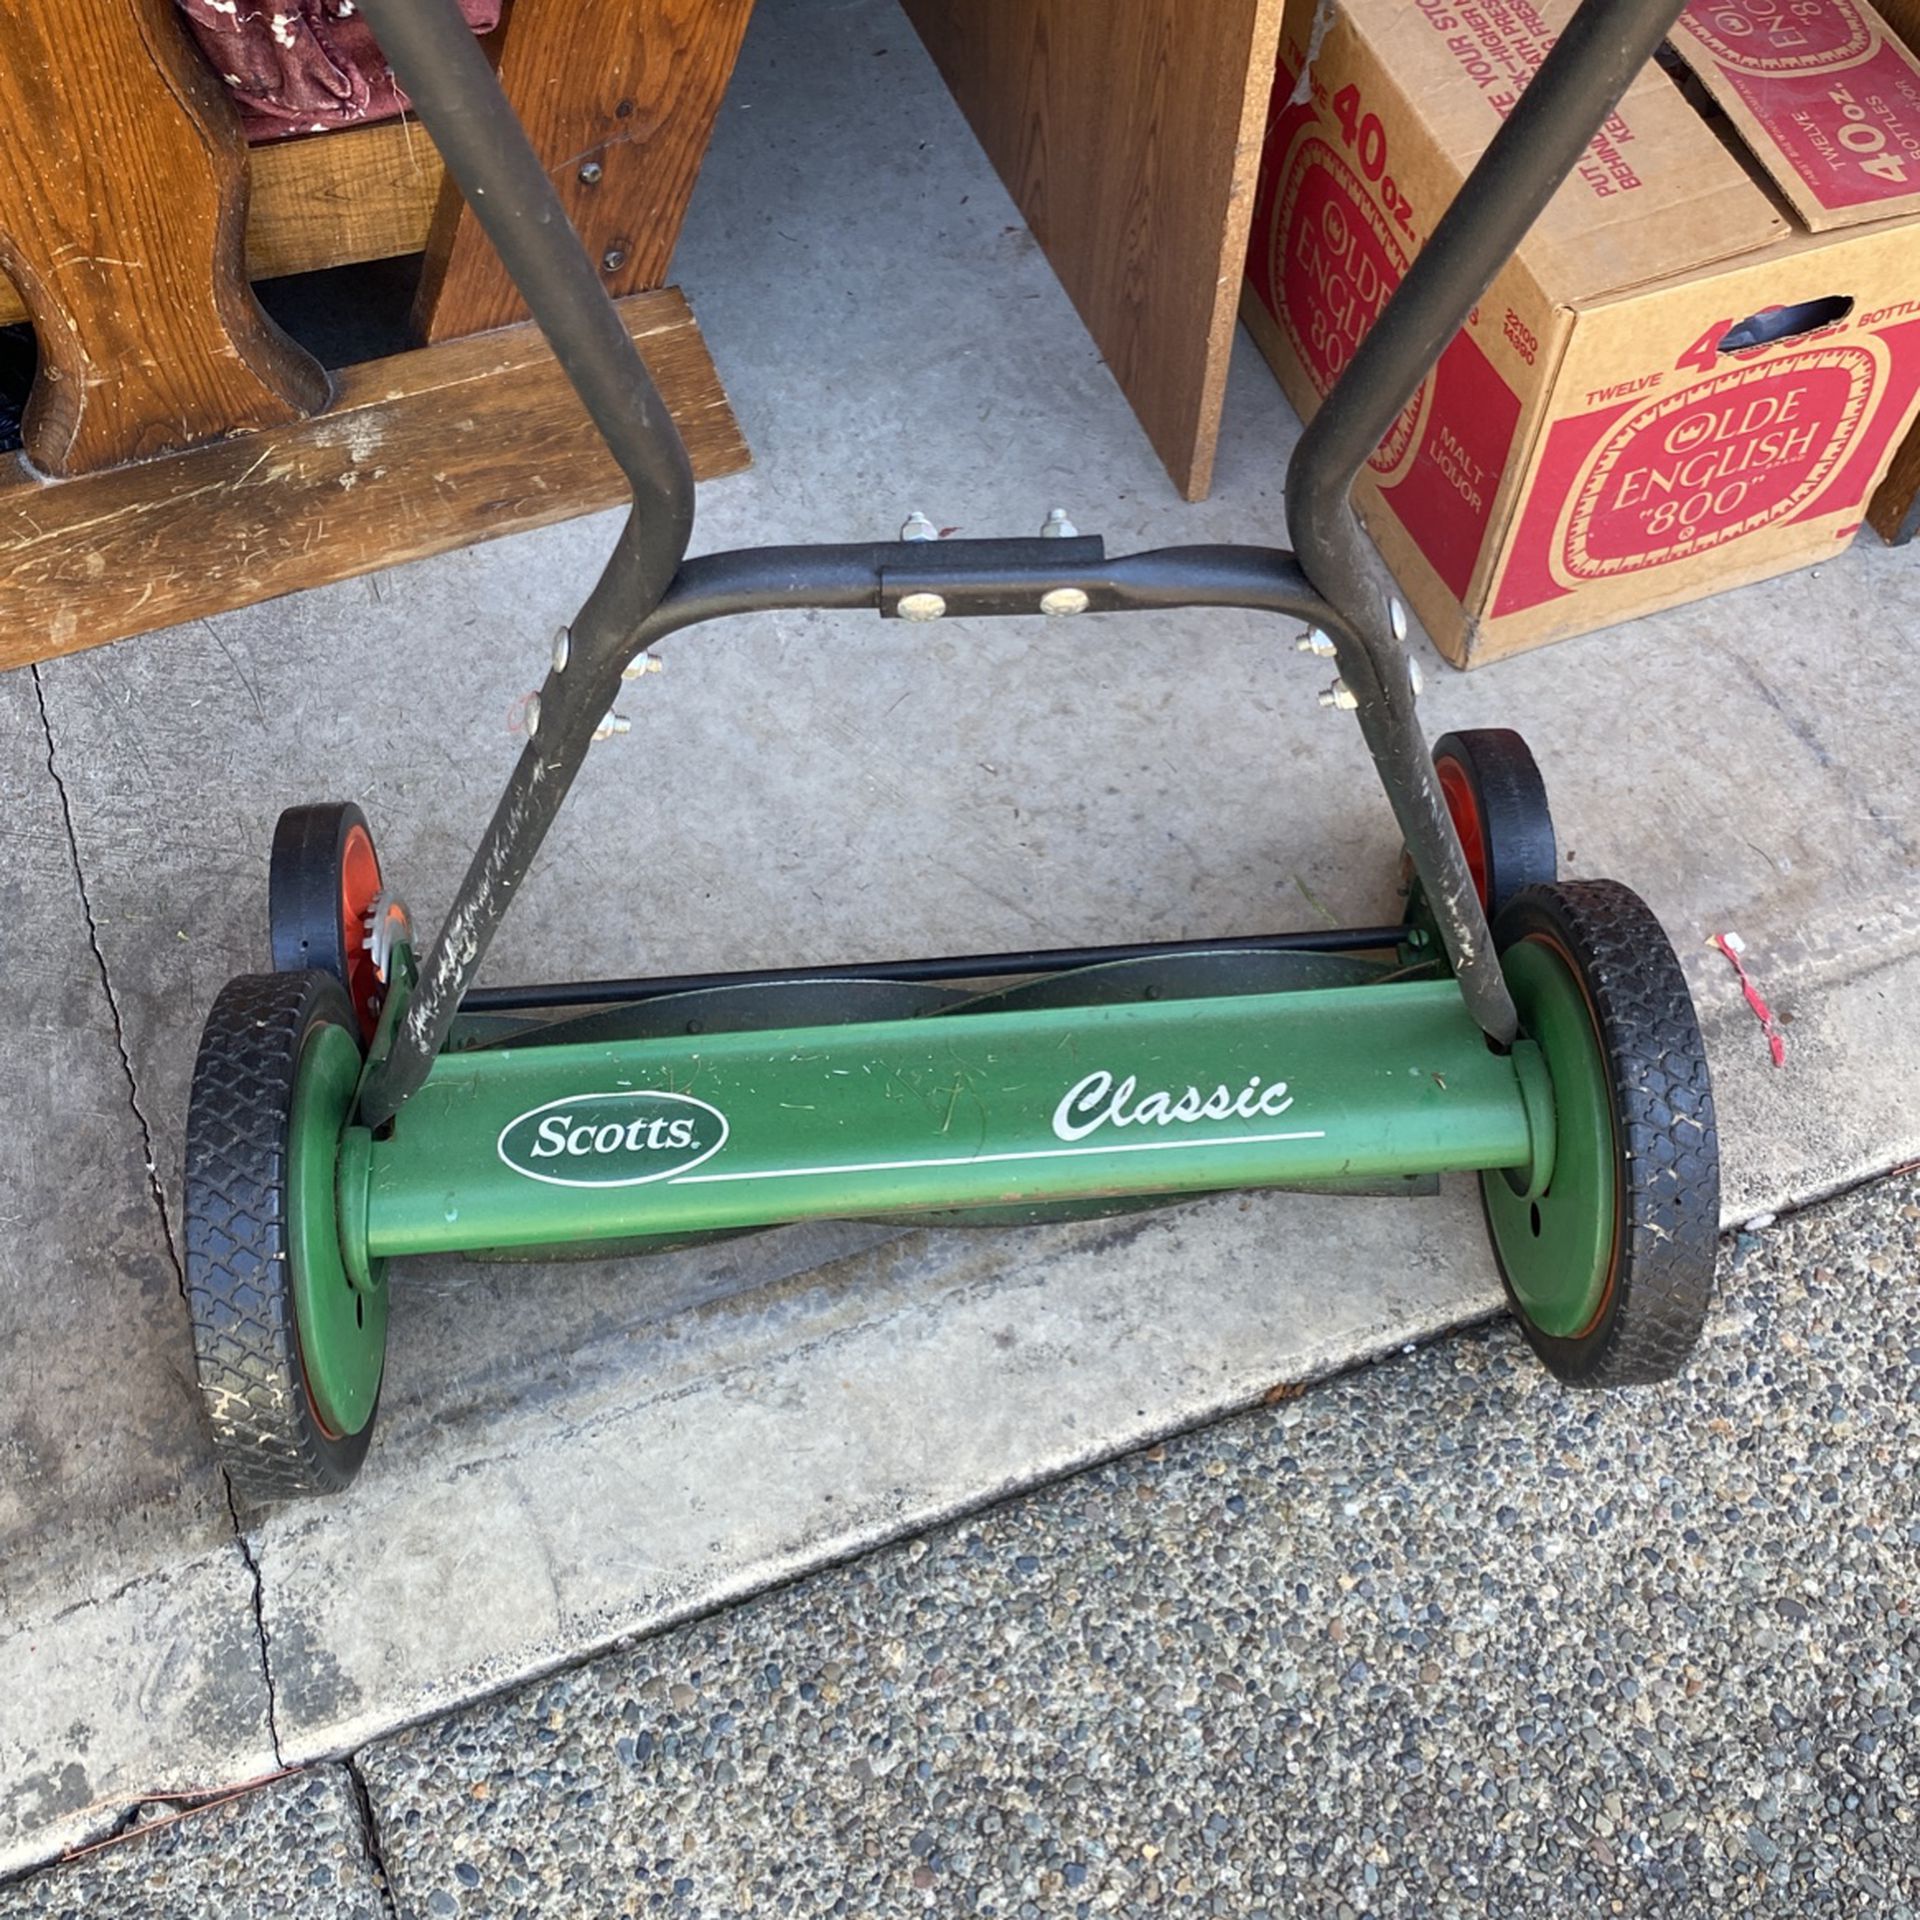 Scott’s Classic Lawn Mower